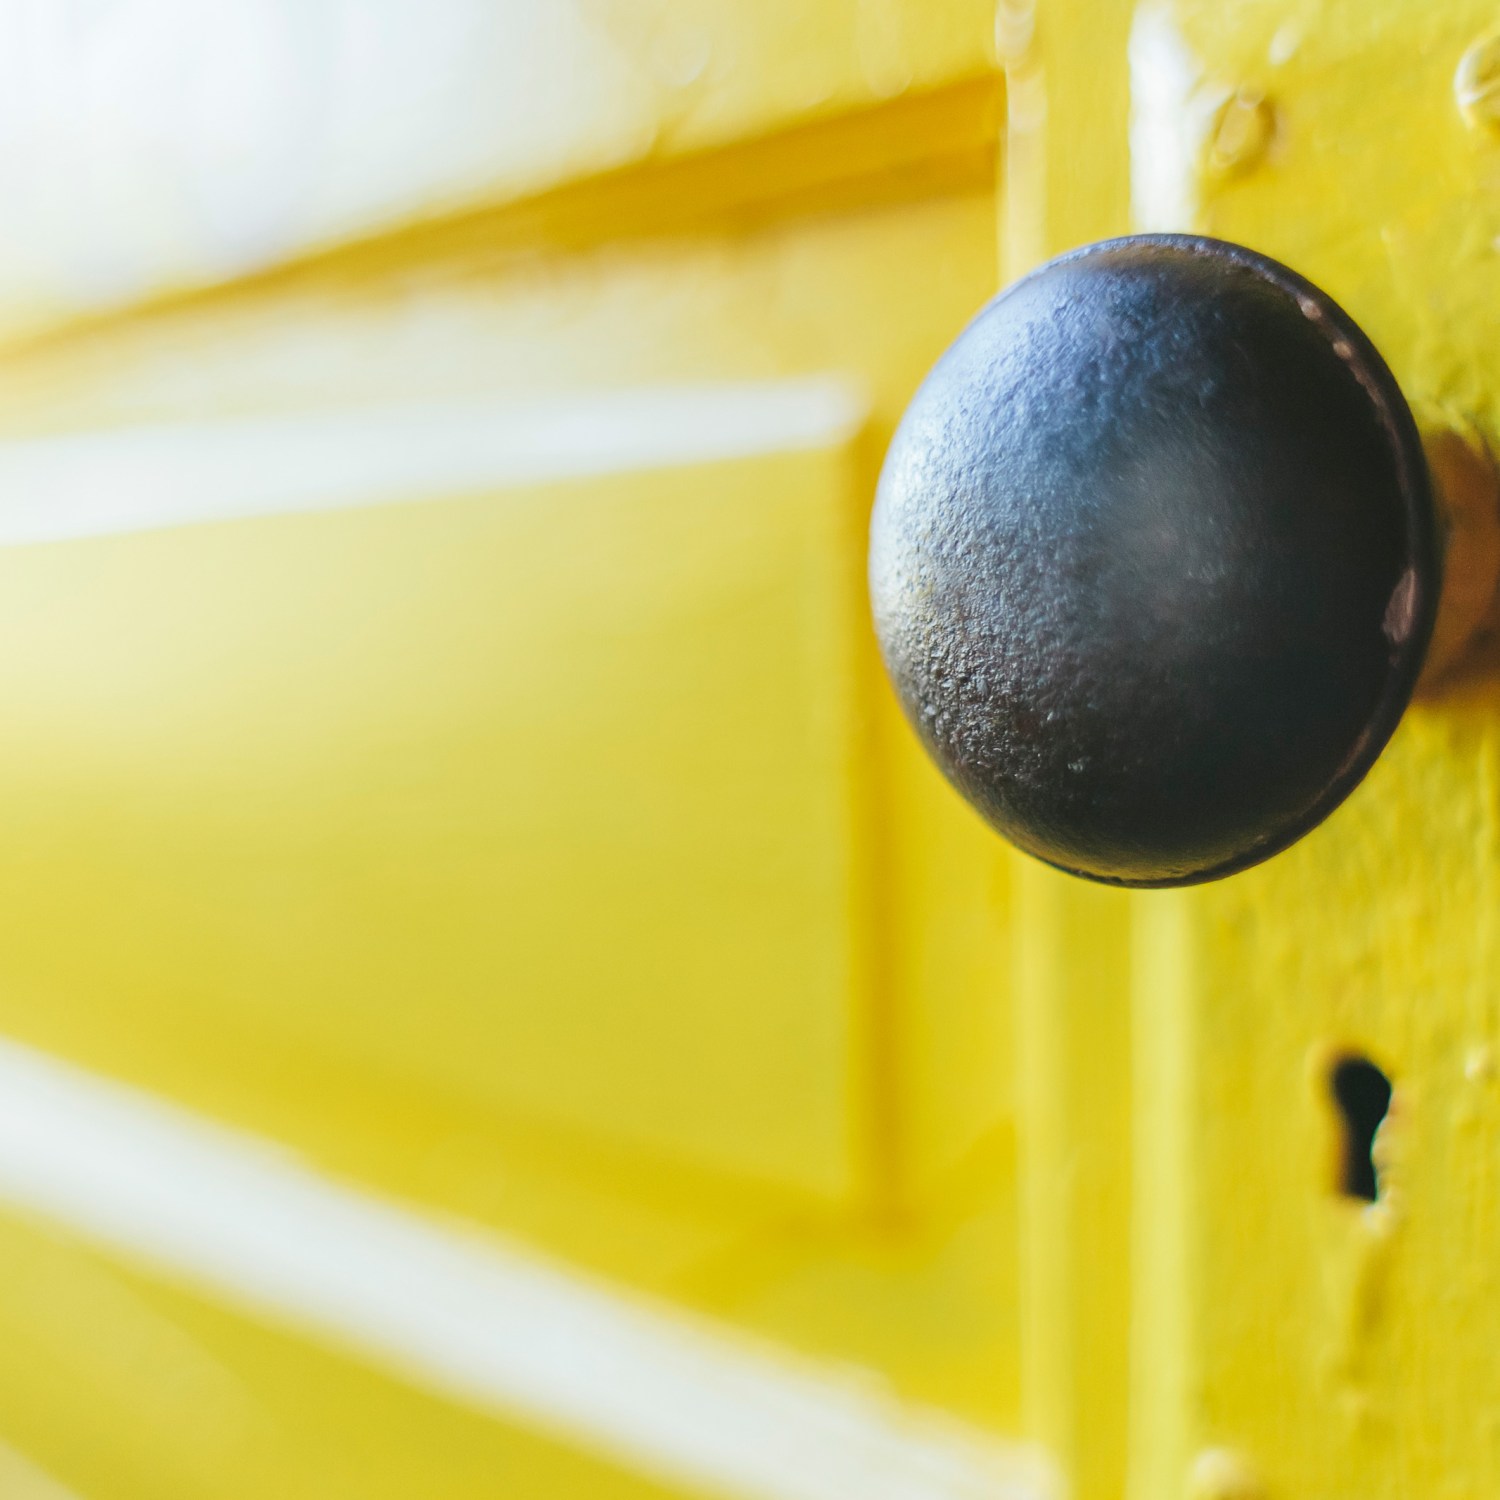 Closeup of yellow door